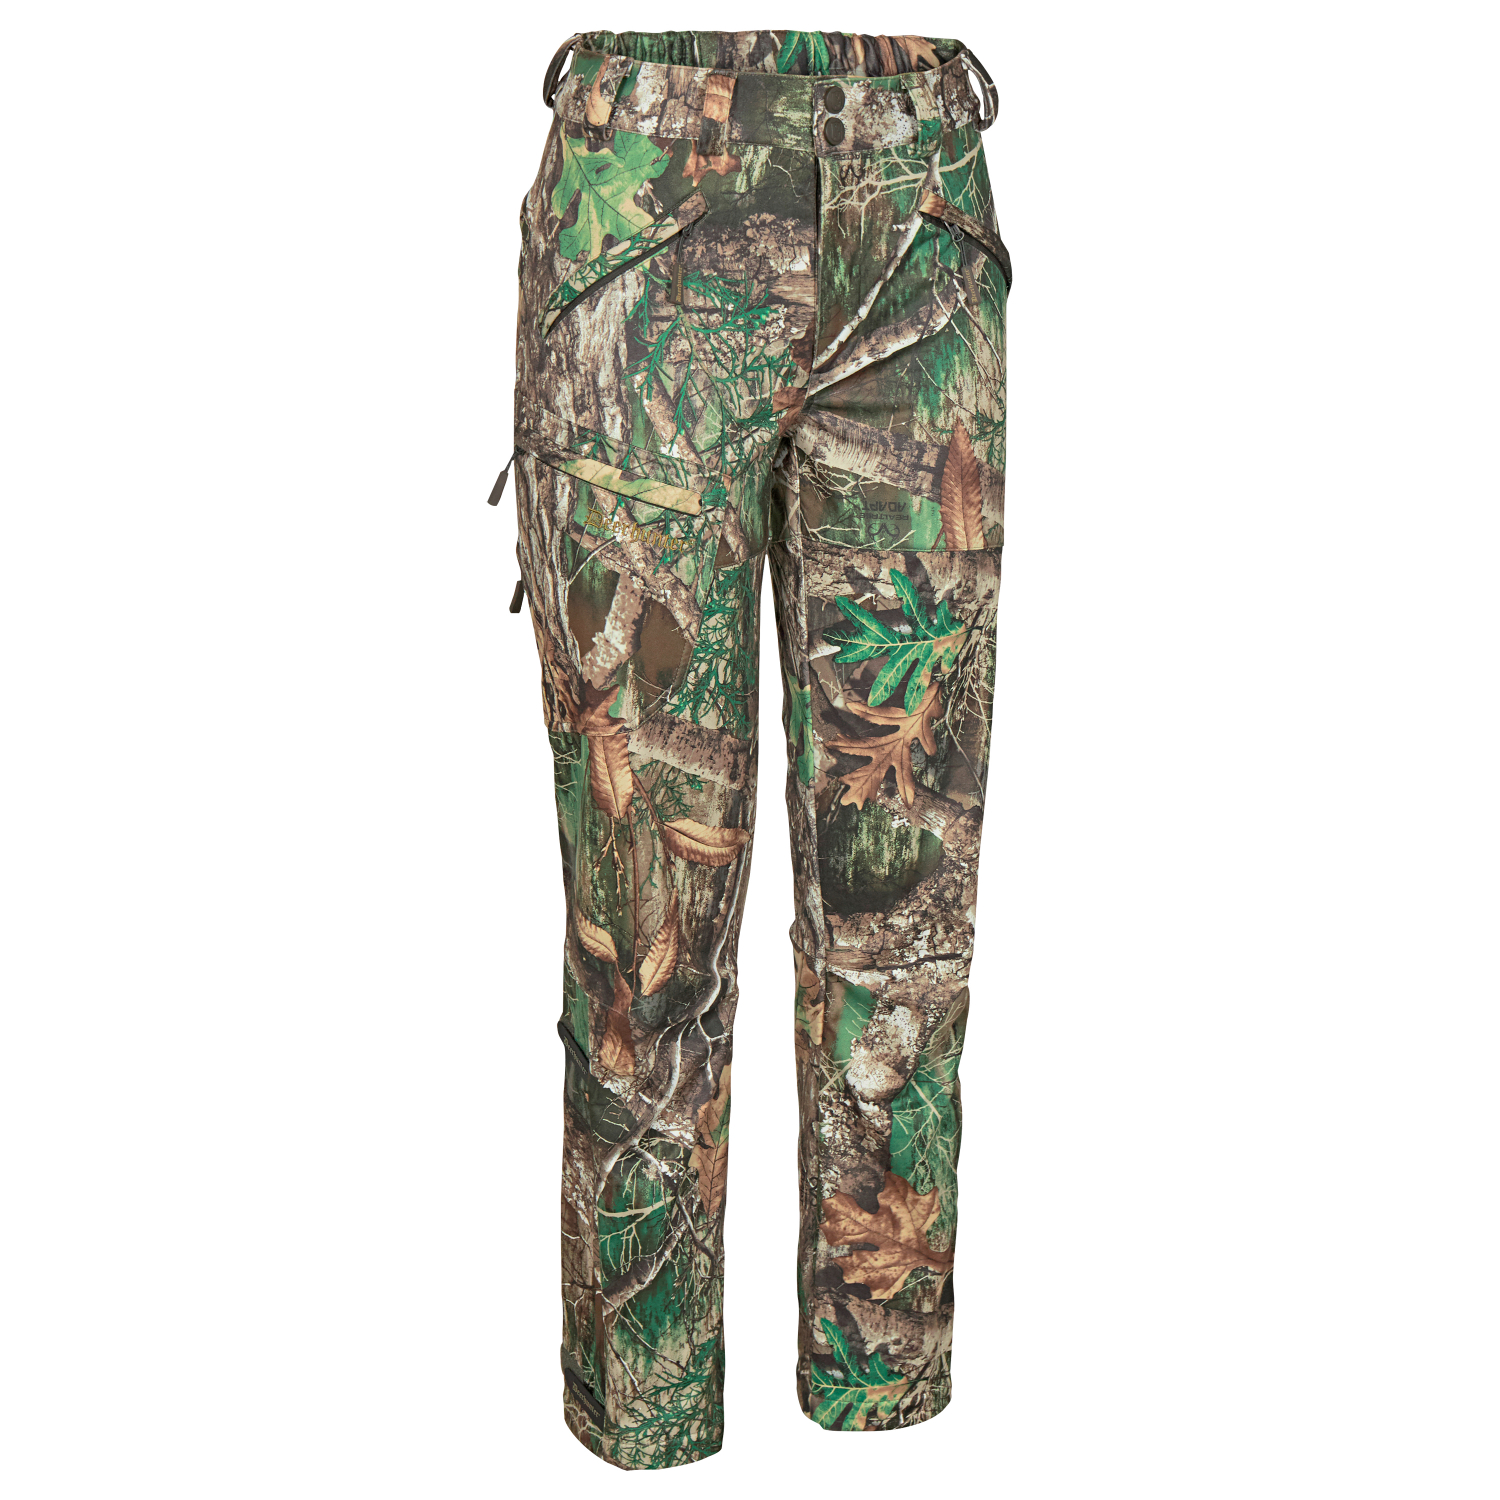 https://images.askari-sport.com/en/product/1/large/deerhunter-womens-outdoor-pants-april.jpg